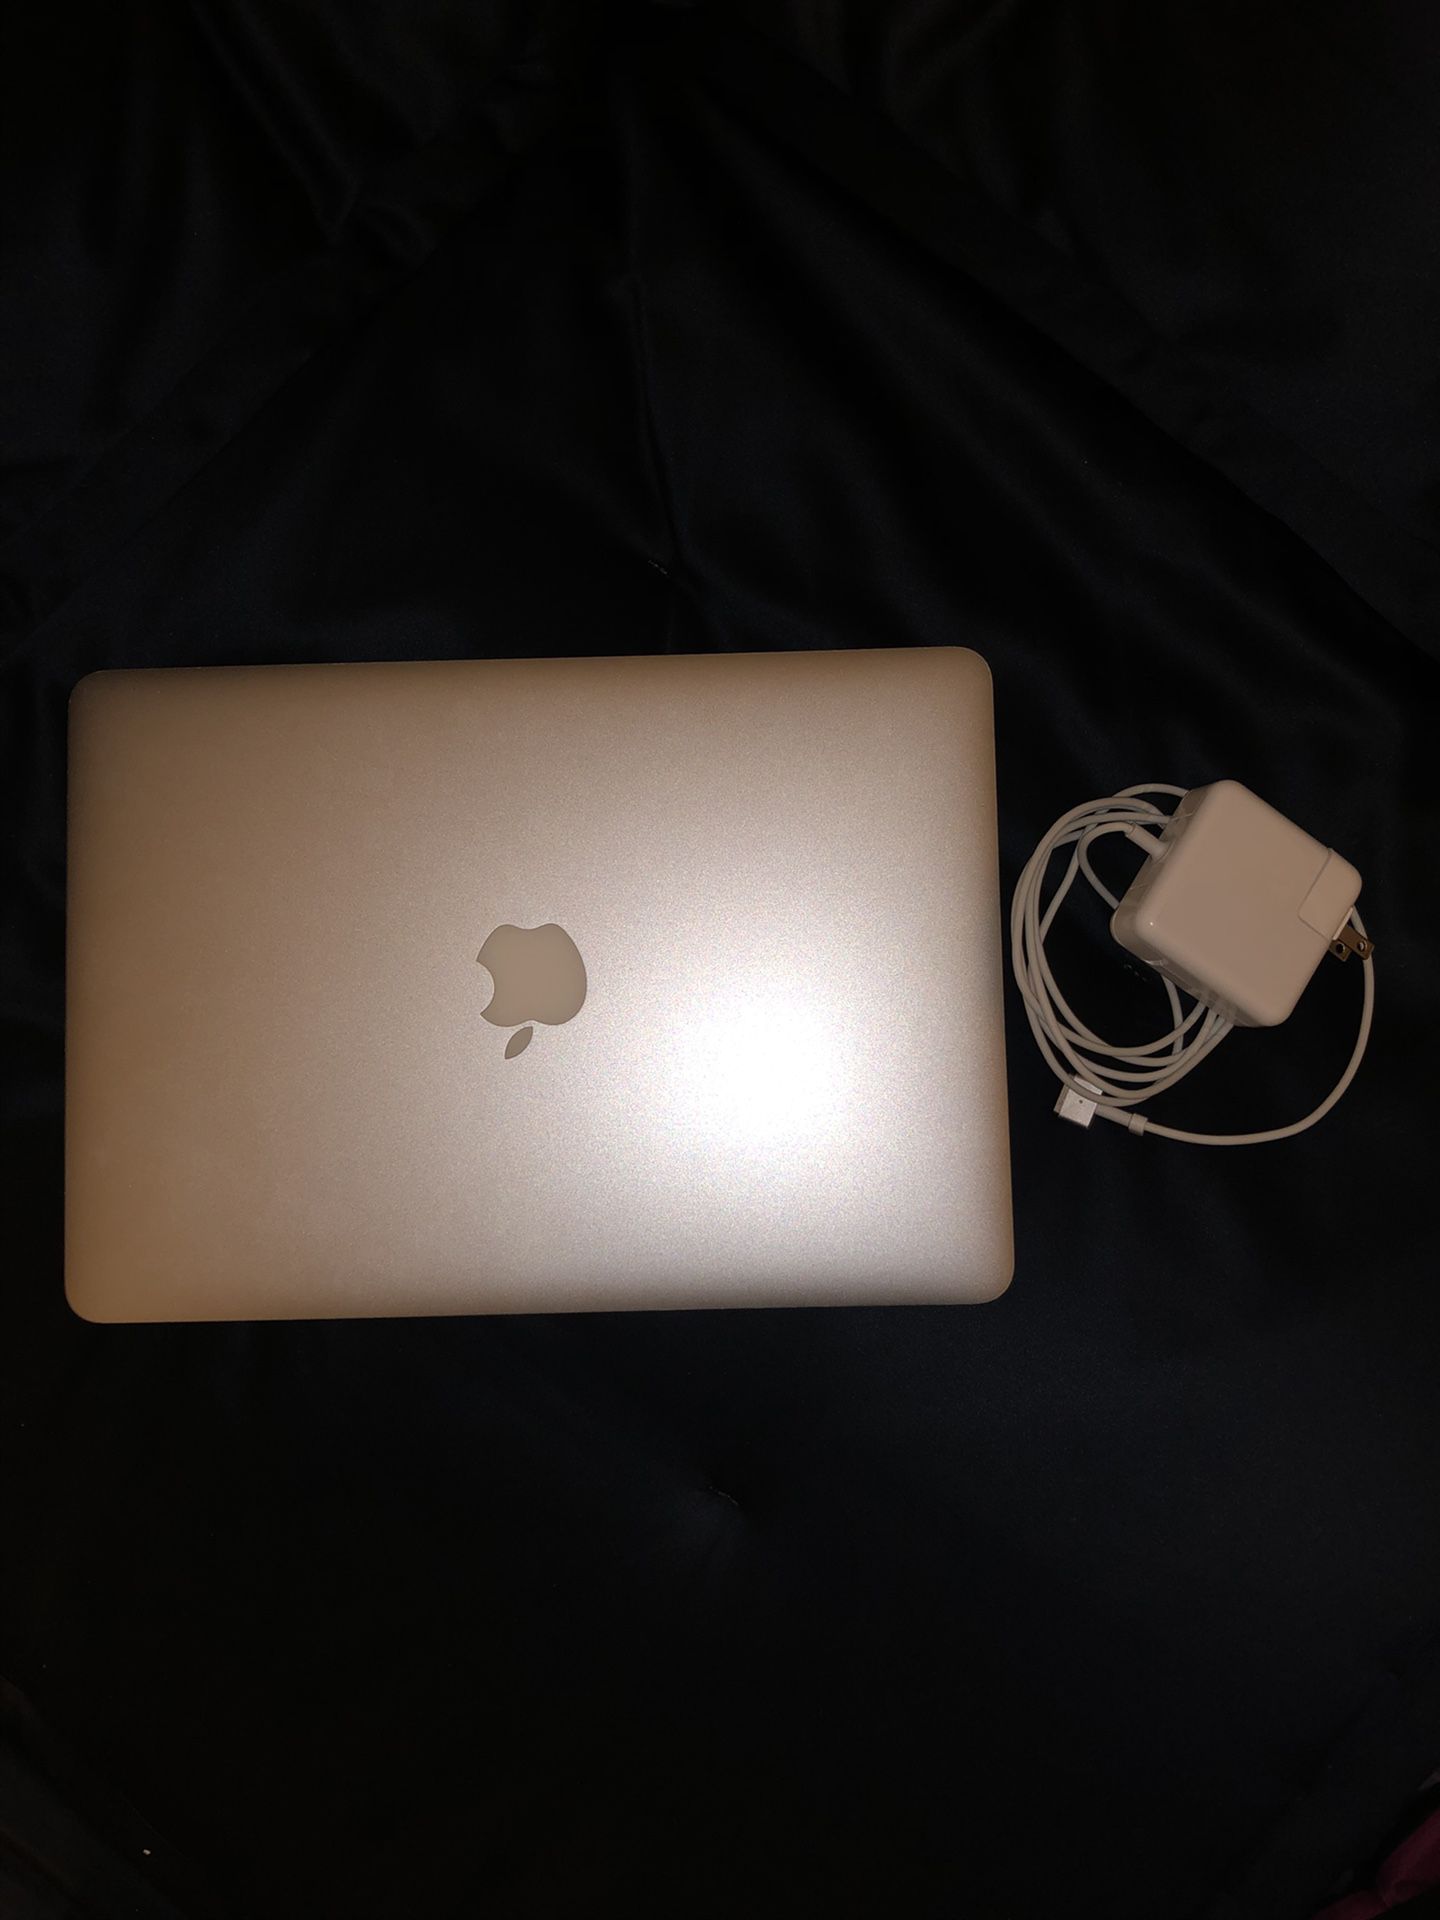 13” MacBook Air 2015